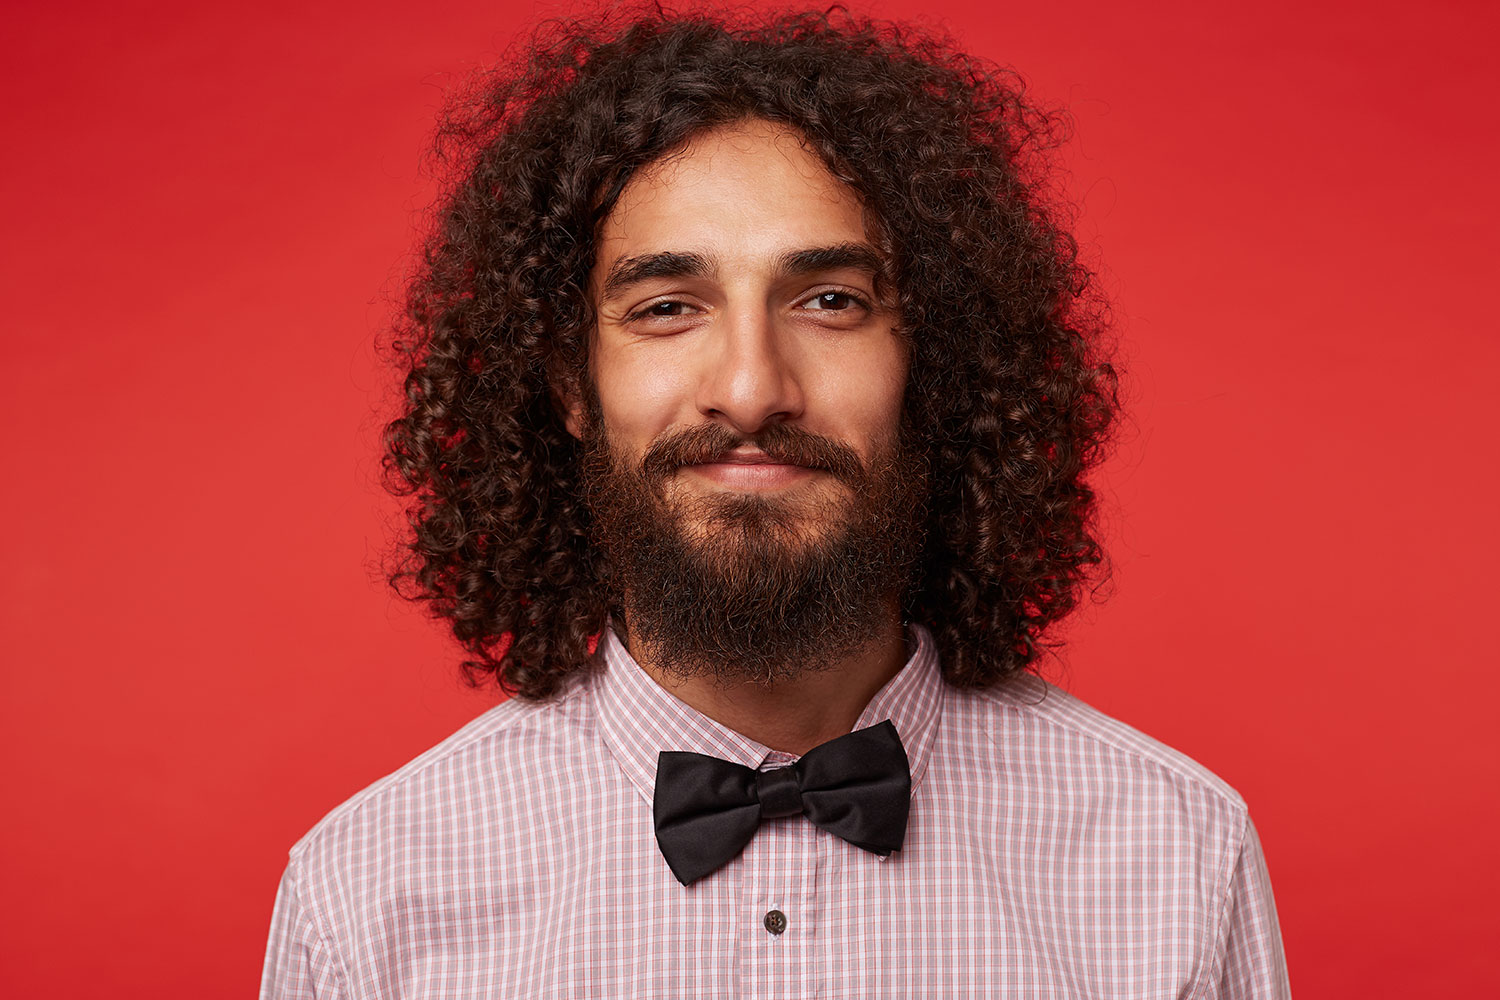 Long curly hair for men